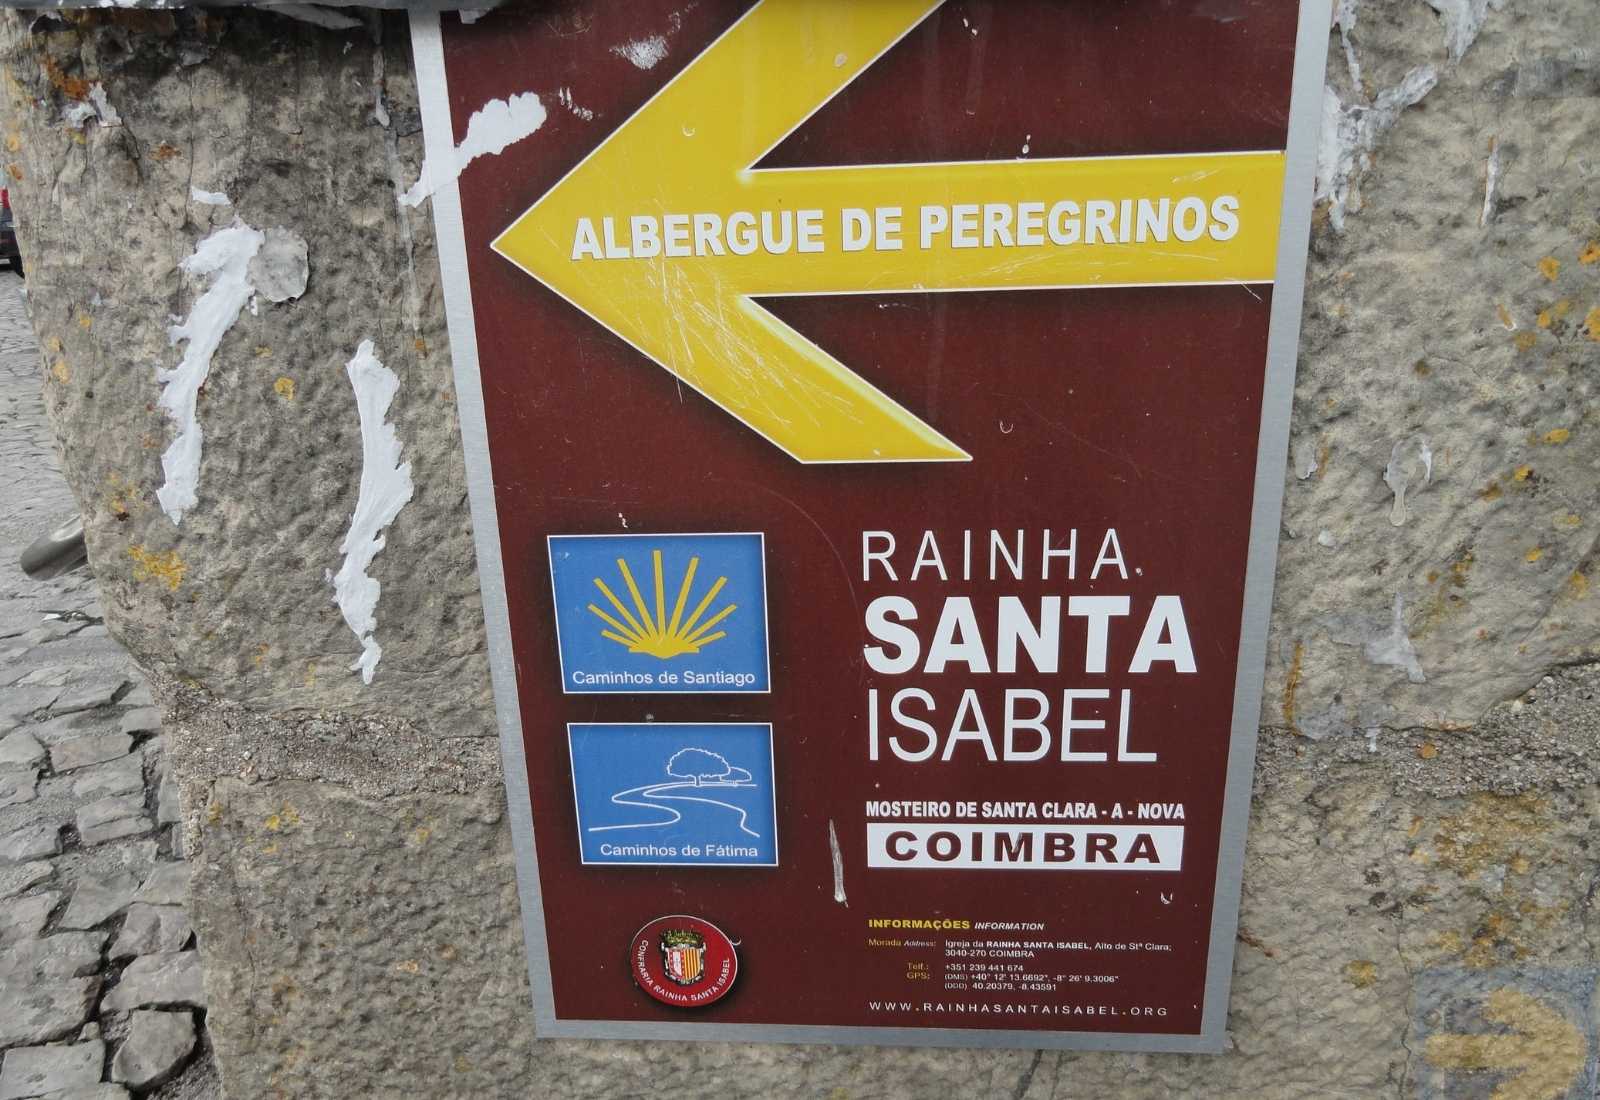 Cartel del Albergue Rainha santa isabel Coimbra